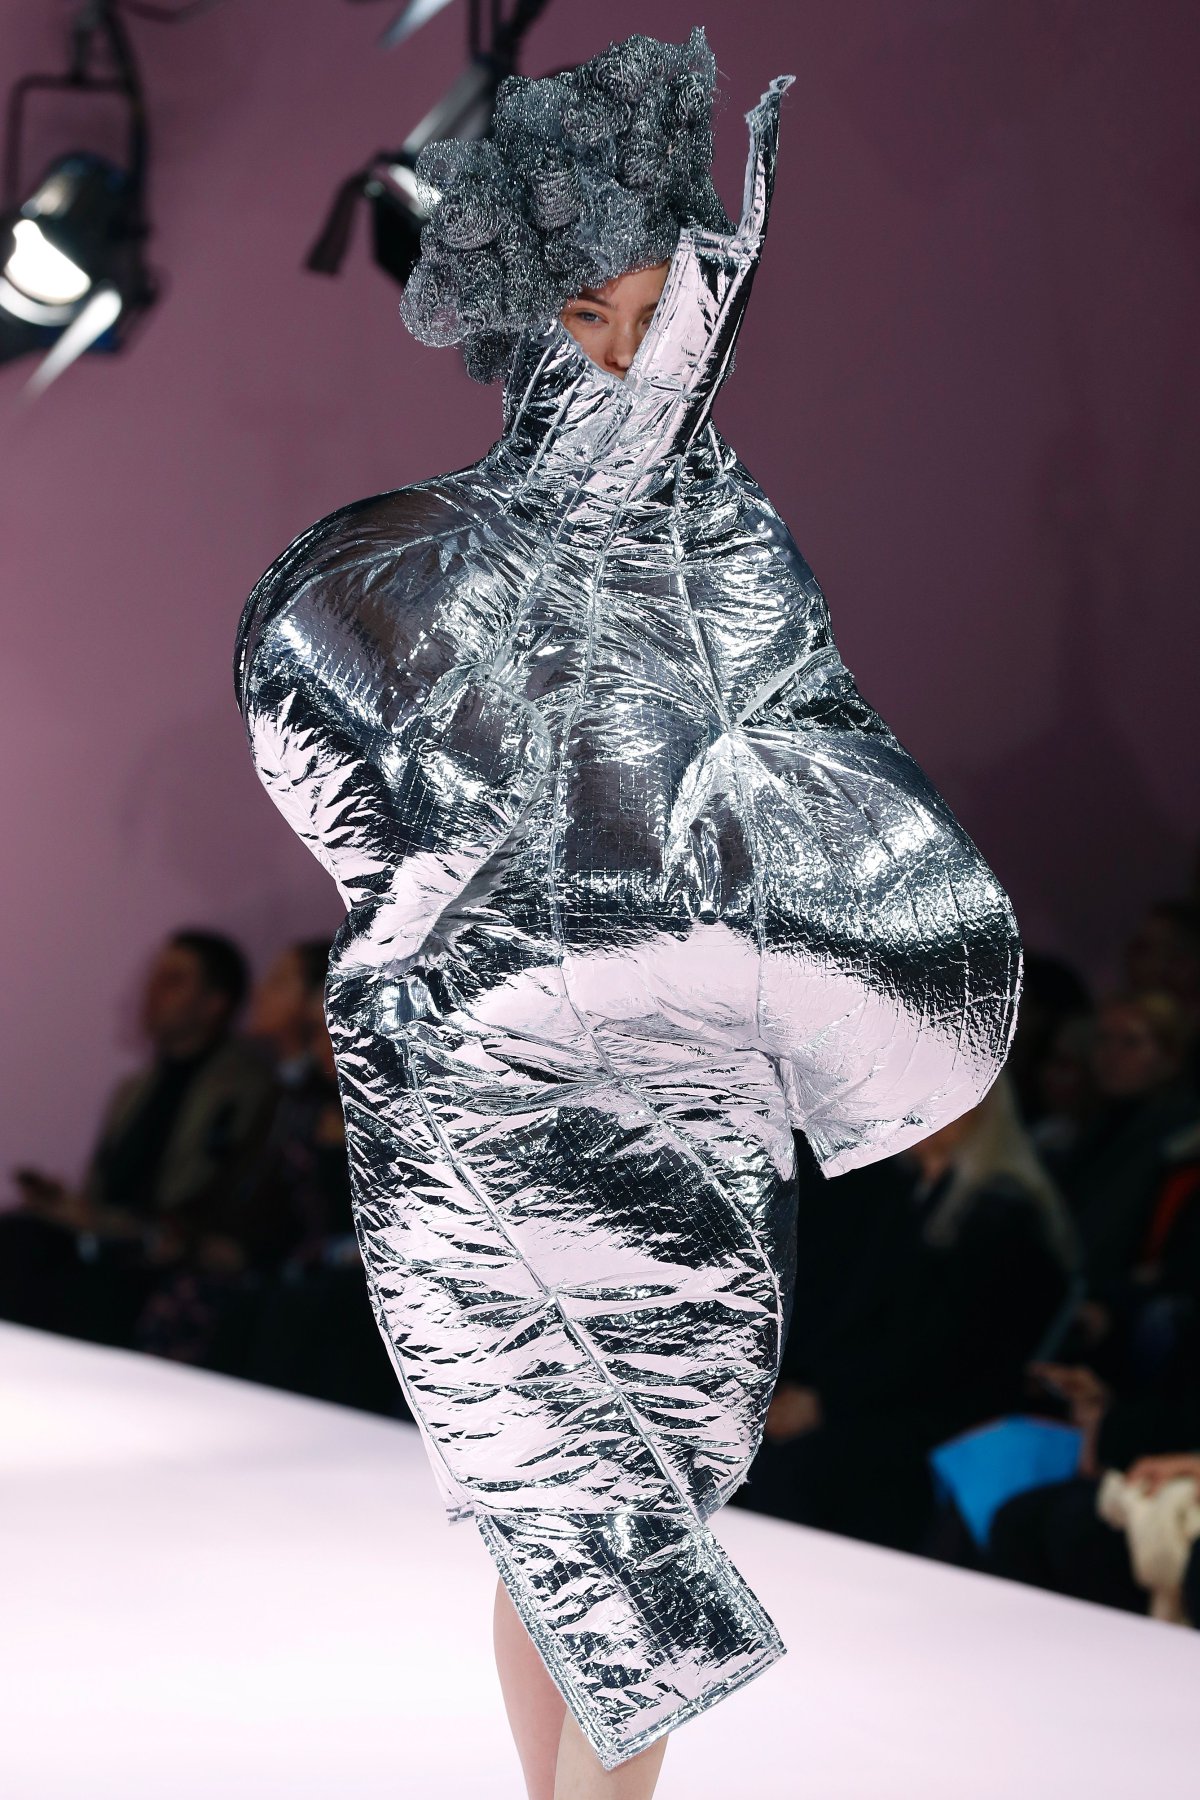 ¡Tela marinera!: los diseños más esperpénticos de las últimas fashion weeks